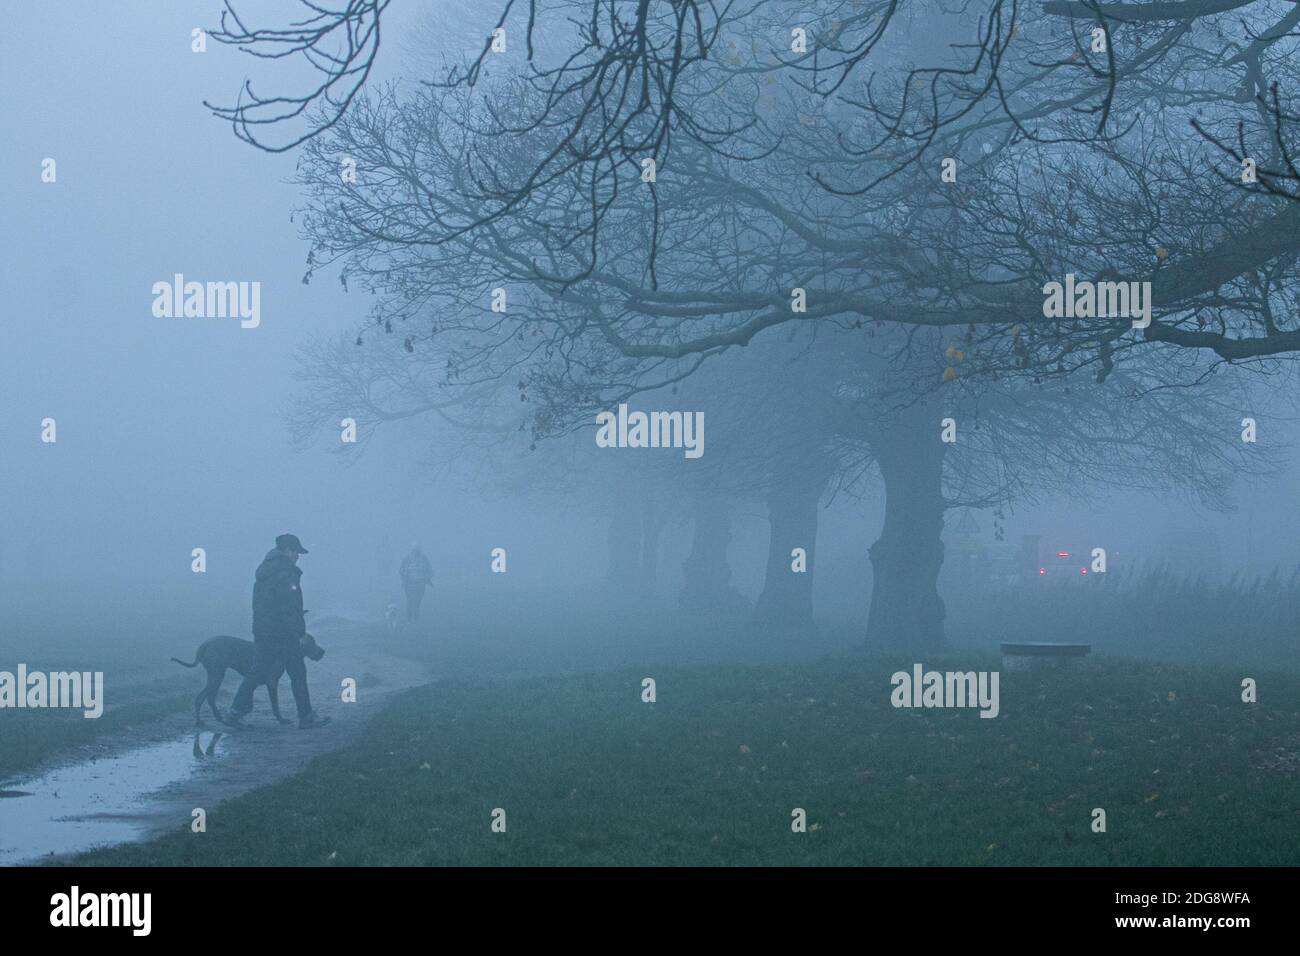 WIMBLEDON LONDON 8. Dezember 2020. Menschen, die ihre Hunde durch dichten frühen Morgennebel auf Wimbledon Common laufen, während London zu eisigen Temperaturen erwacht. Kredit: amer ghazzal/Alamy Live Nachrichten Stockfoto